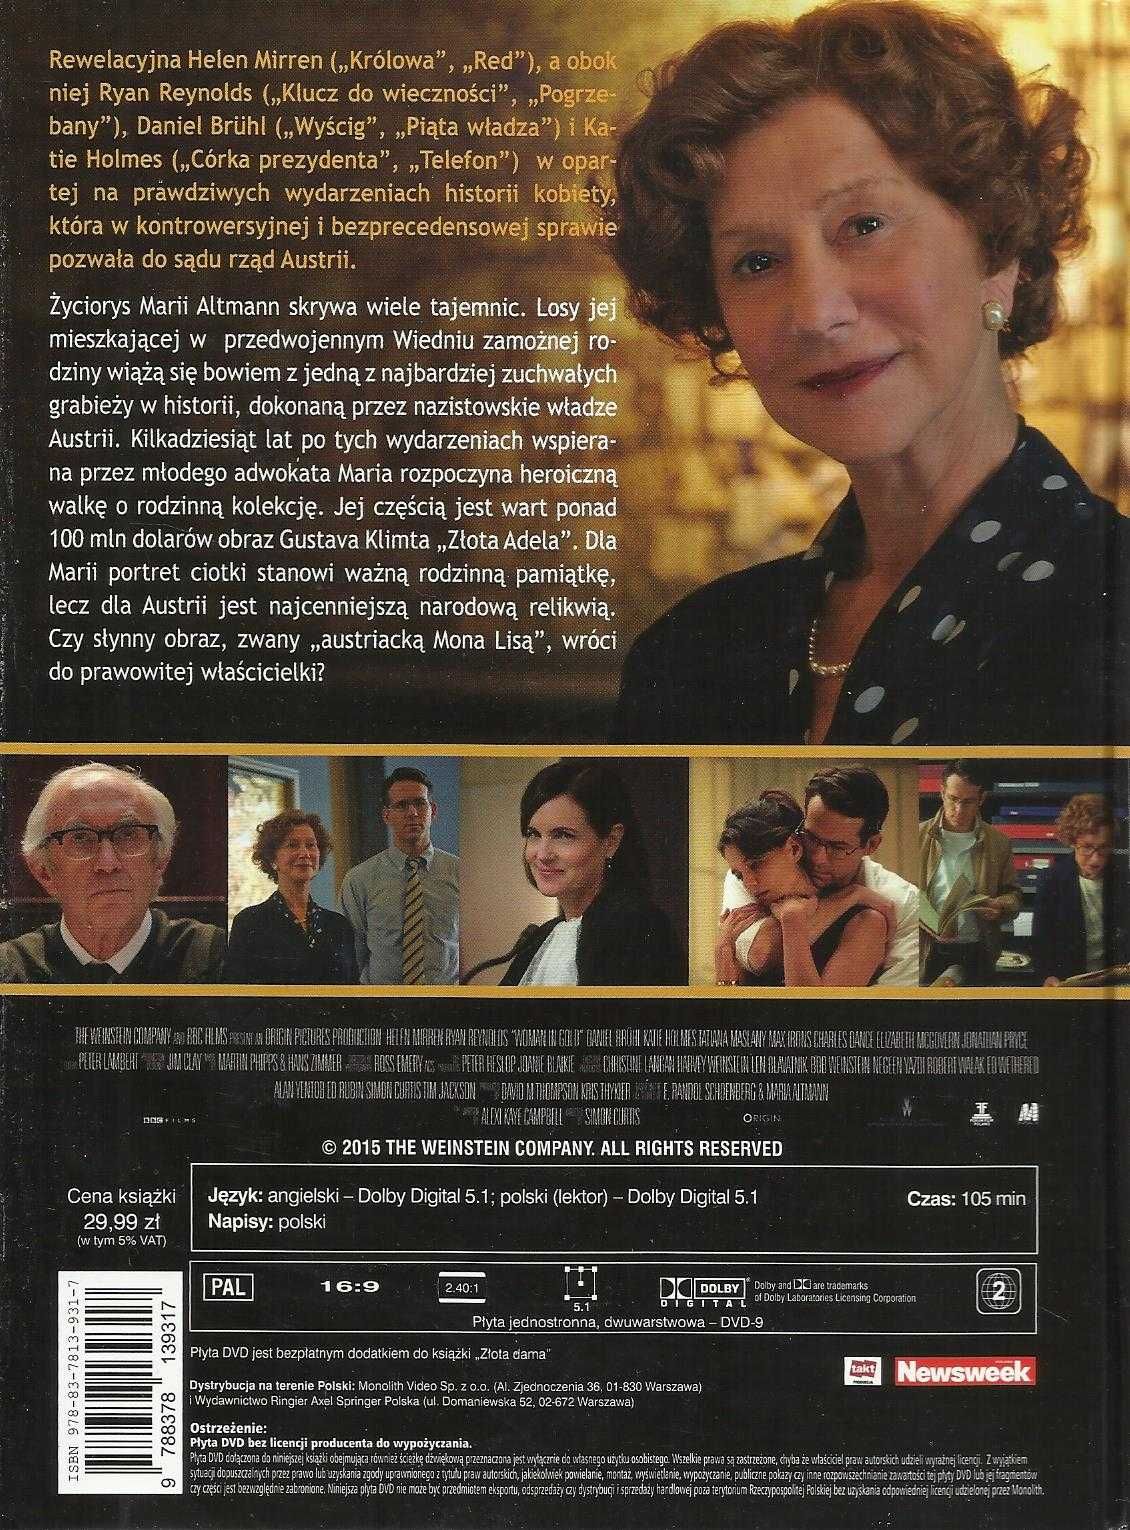 Złota Dama (2015) dvd Helen Mirren Lektor Pl